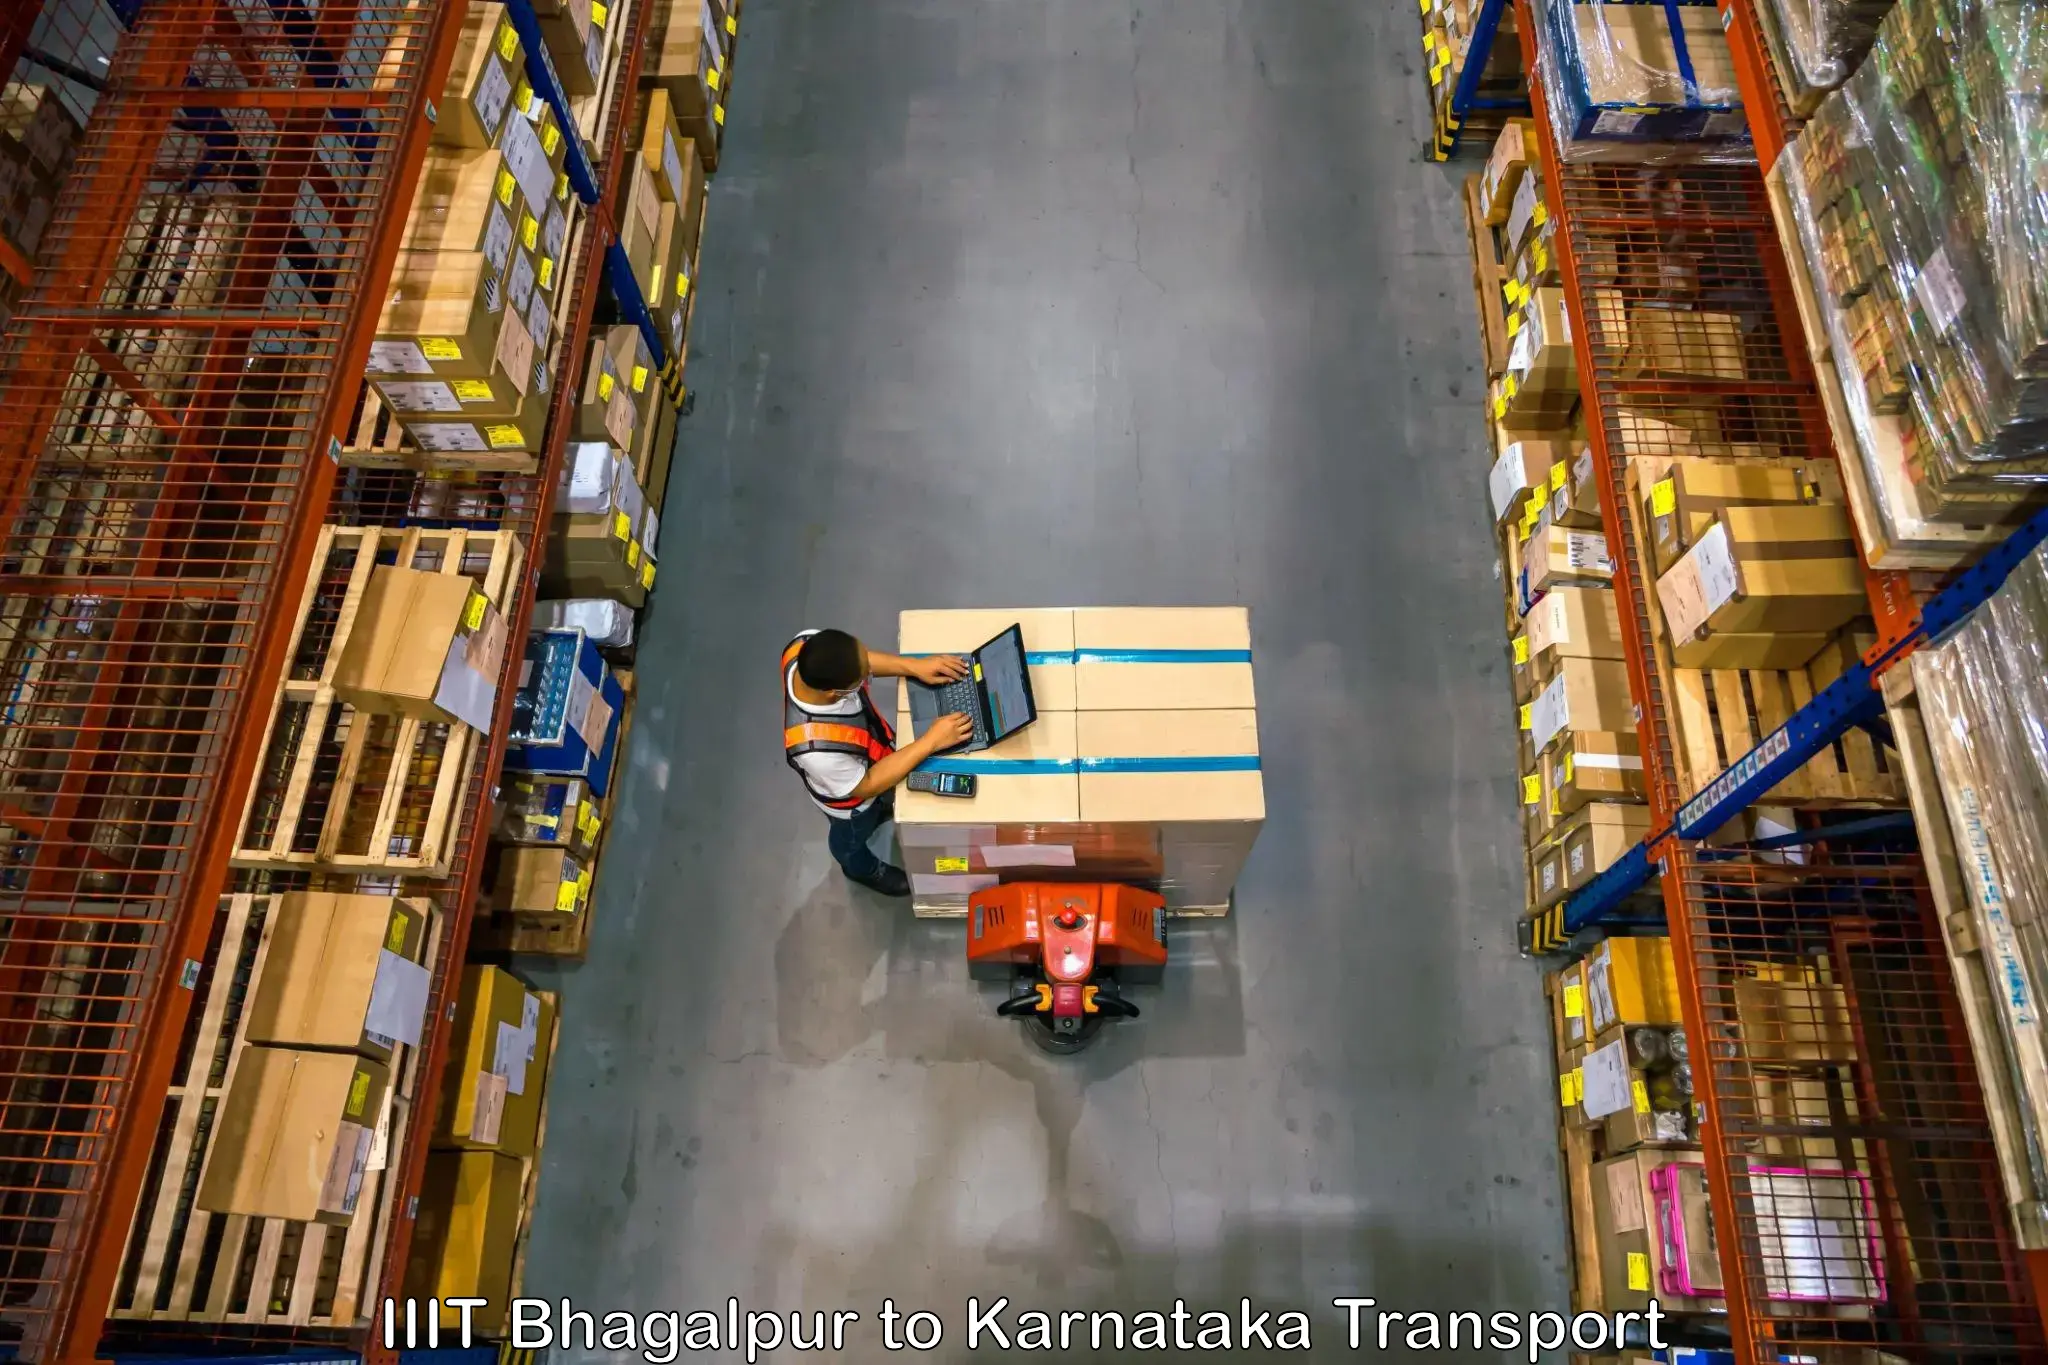 Cargo transport services IIIT Bhagalpur to Vijayapura